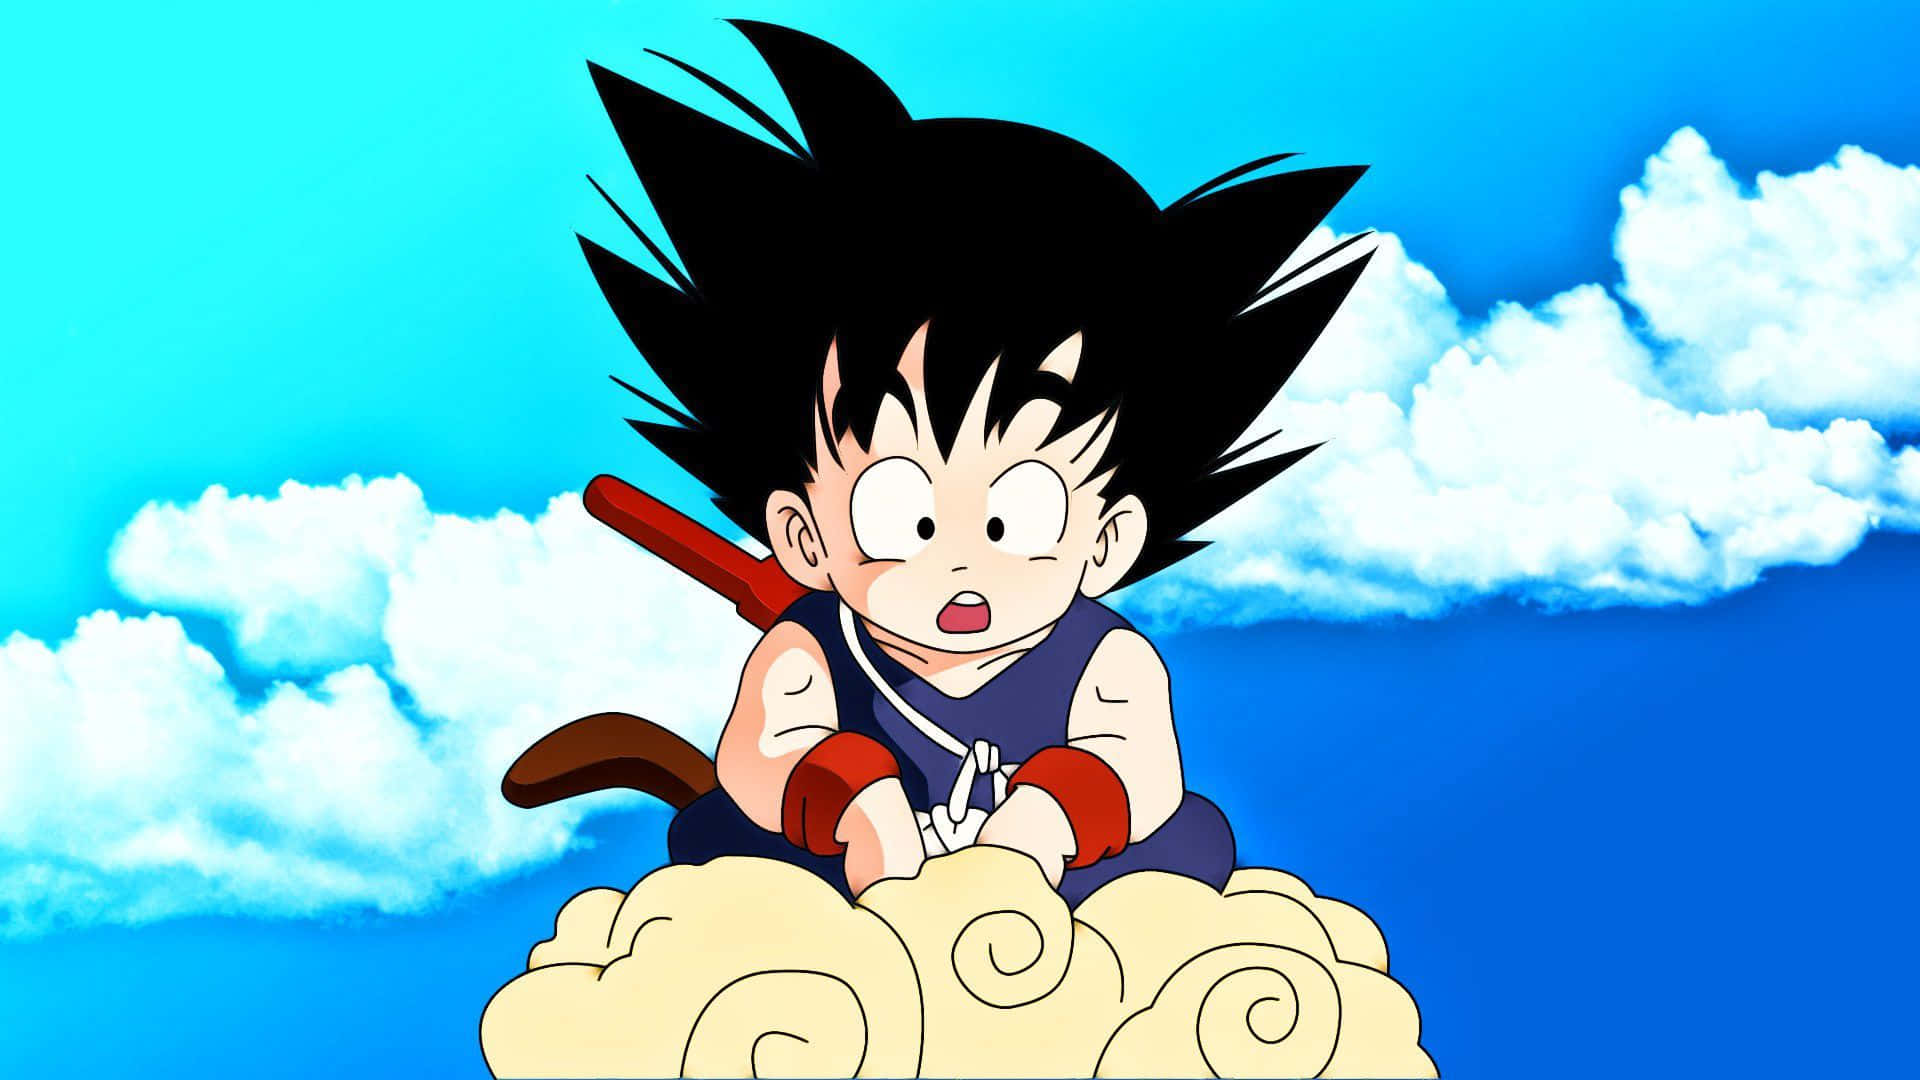 Imagemdo Goku Em Uma Nuvem.